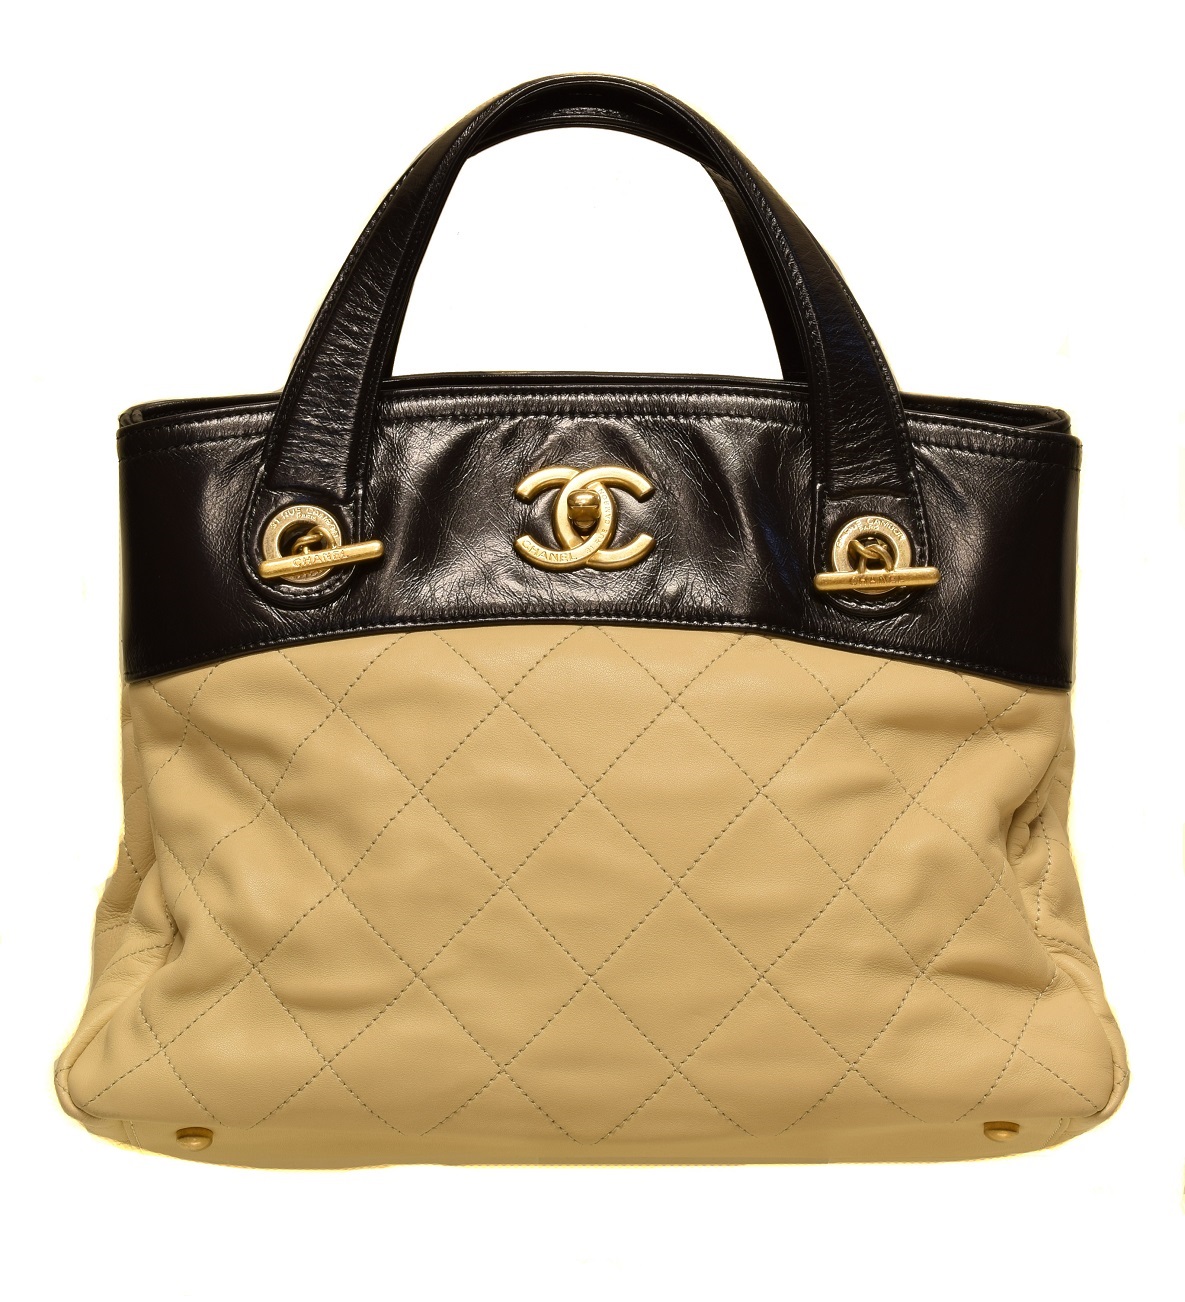 Túi xách nữ Chanel Tote màu đen xích vàng sang trọng  TXNC012